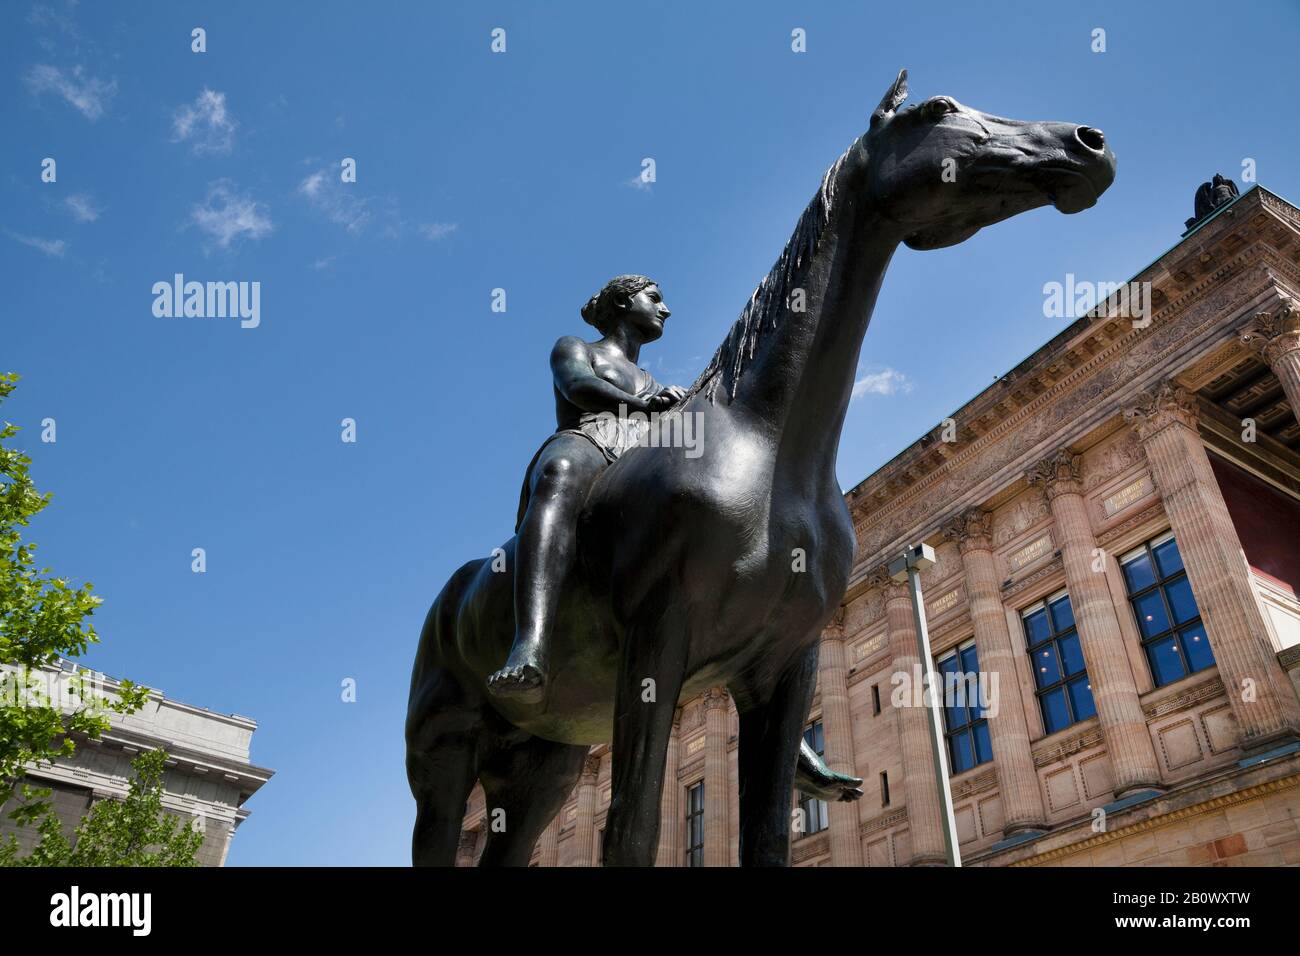 Skulptur Amazon zu Pferd von Louis Tuaillon vor der alten Nationalgalerie,  Museumsinsel, Mitte, Berlin, Deutschland, Europa Stockfotografie - Alamy